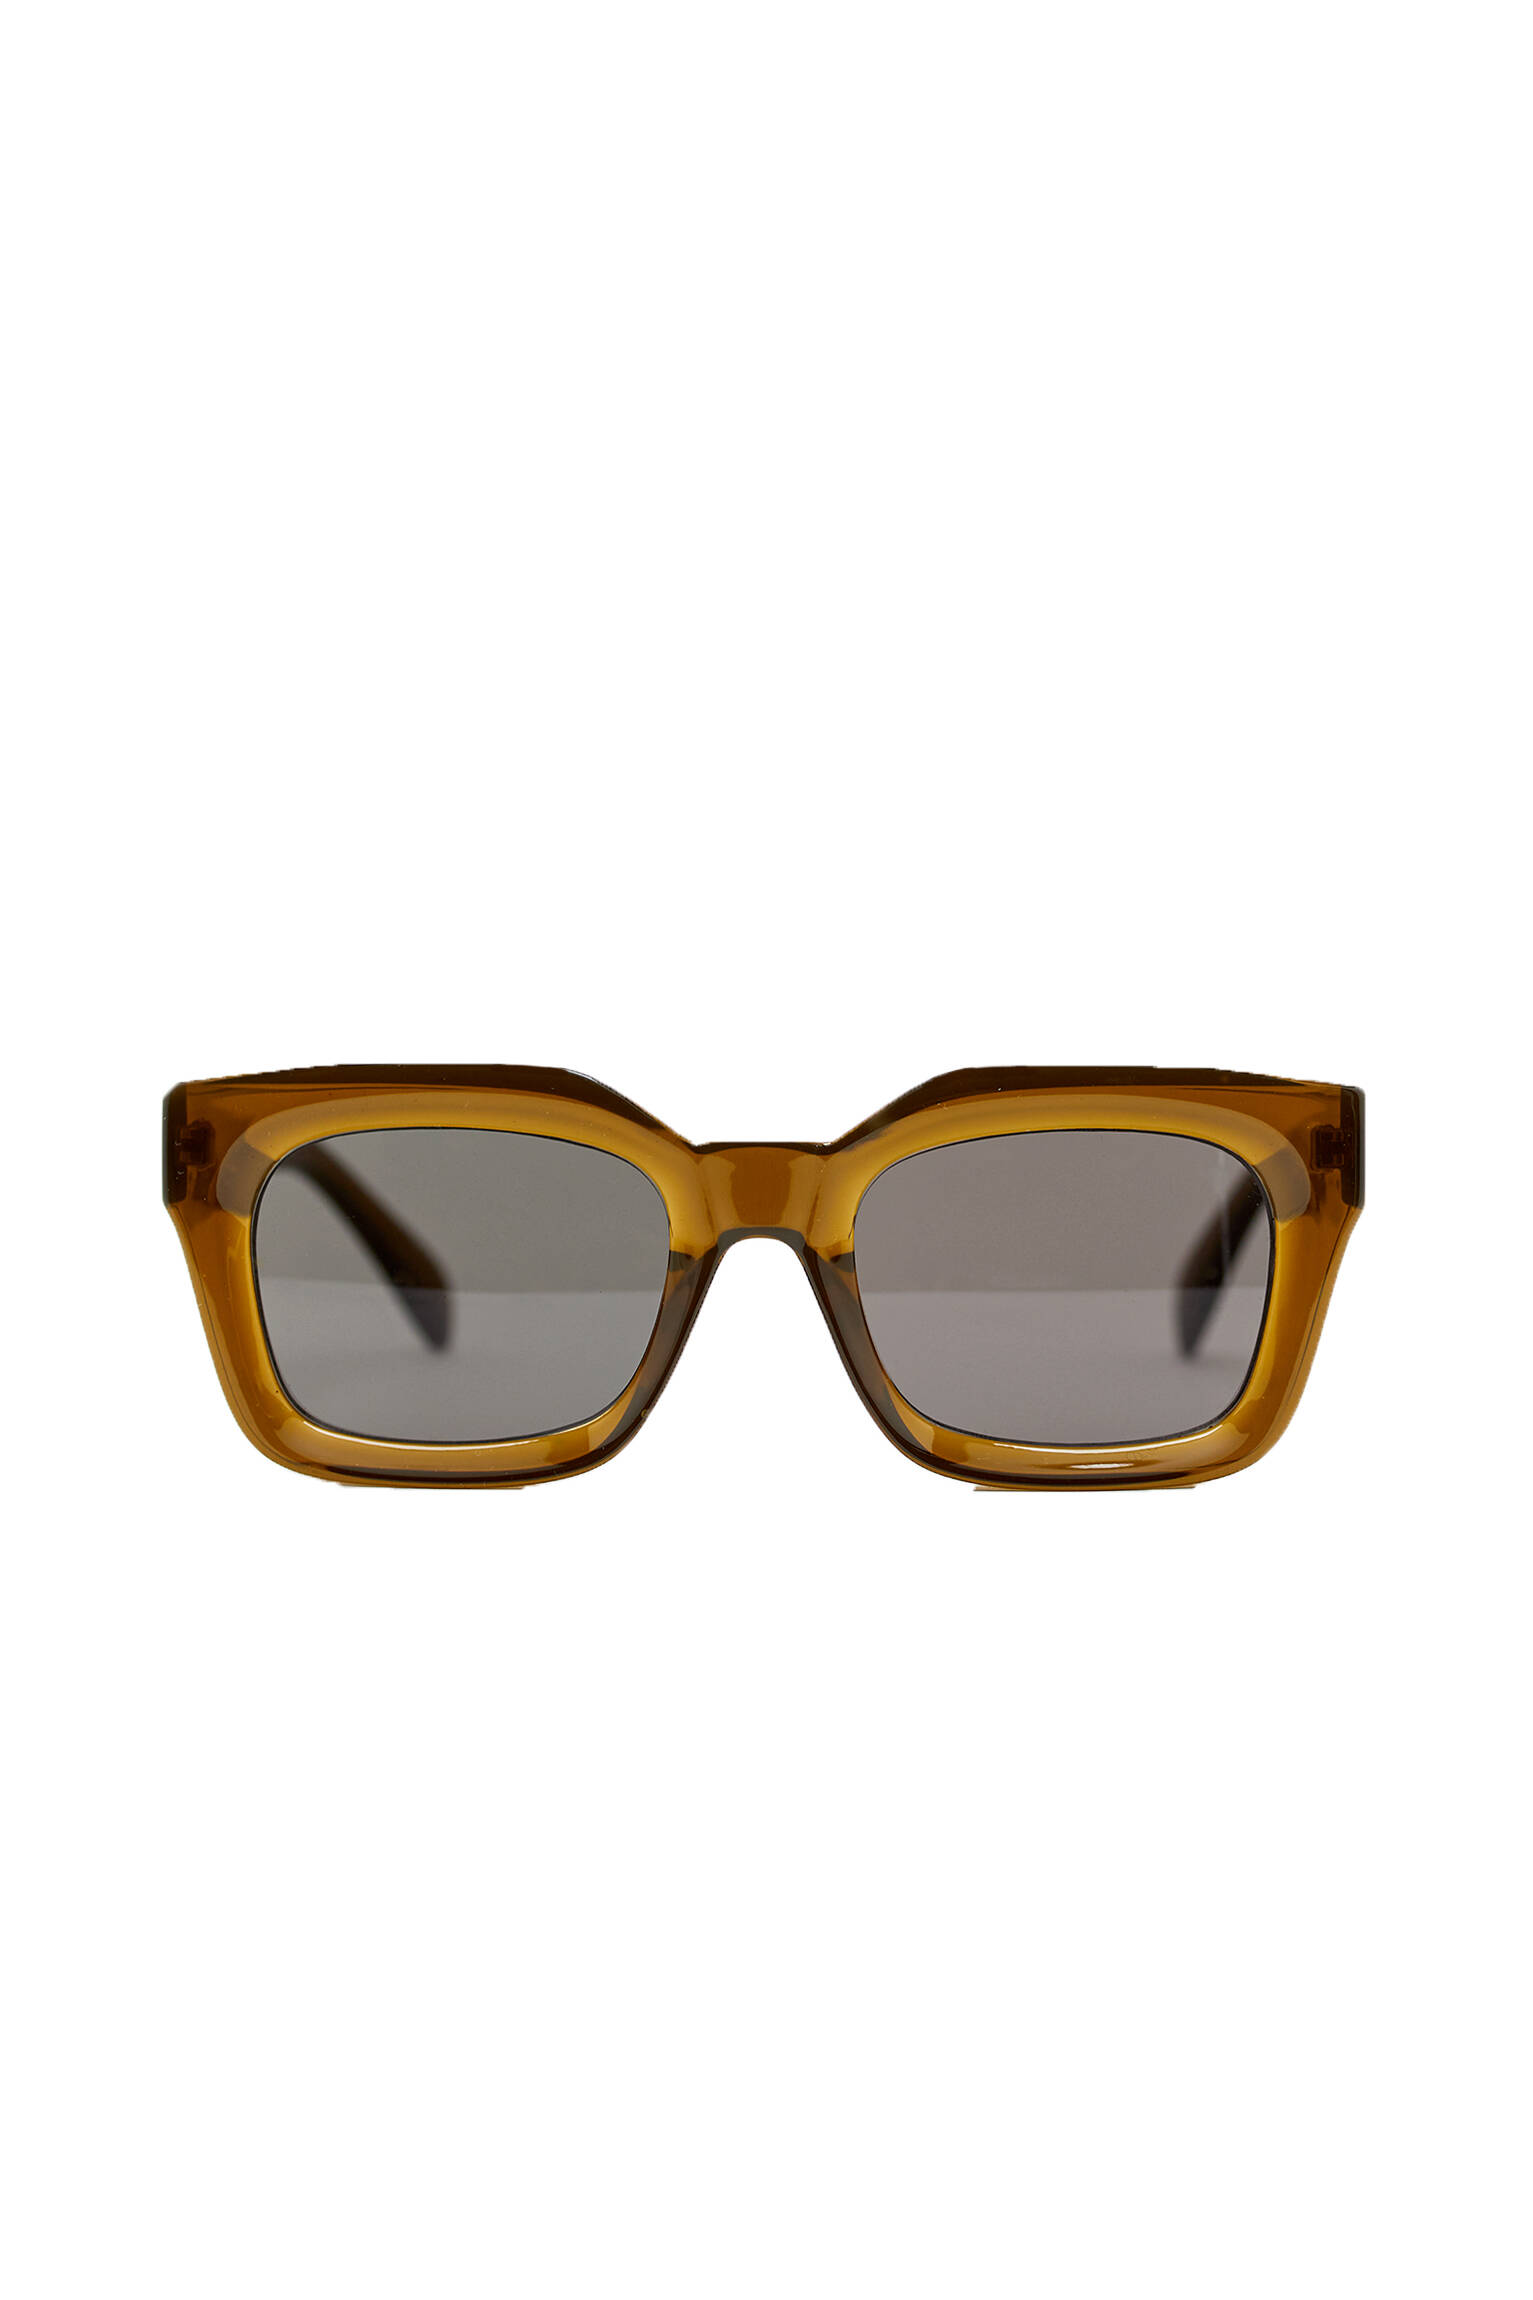 Солнцезащитные очки в квадратной оправе цвета хаки ХАКИ Pull & Bear